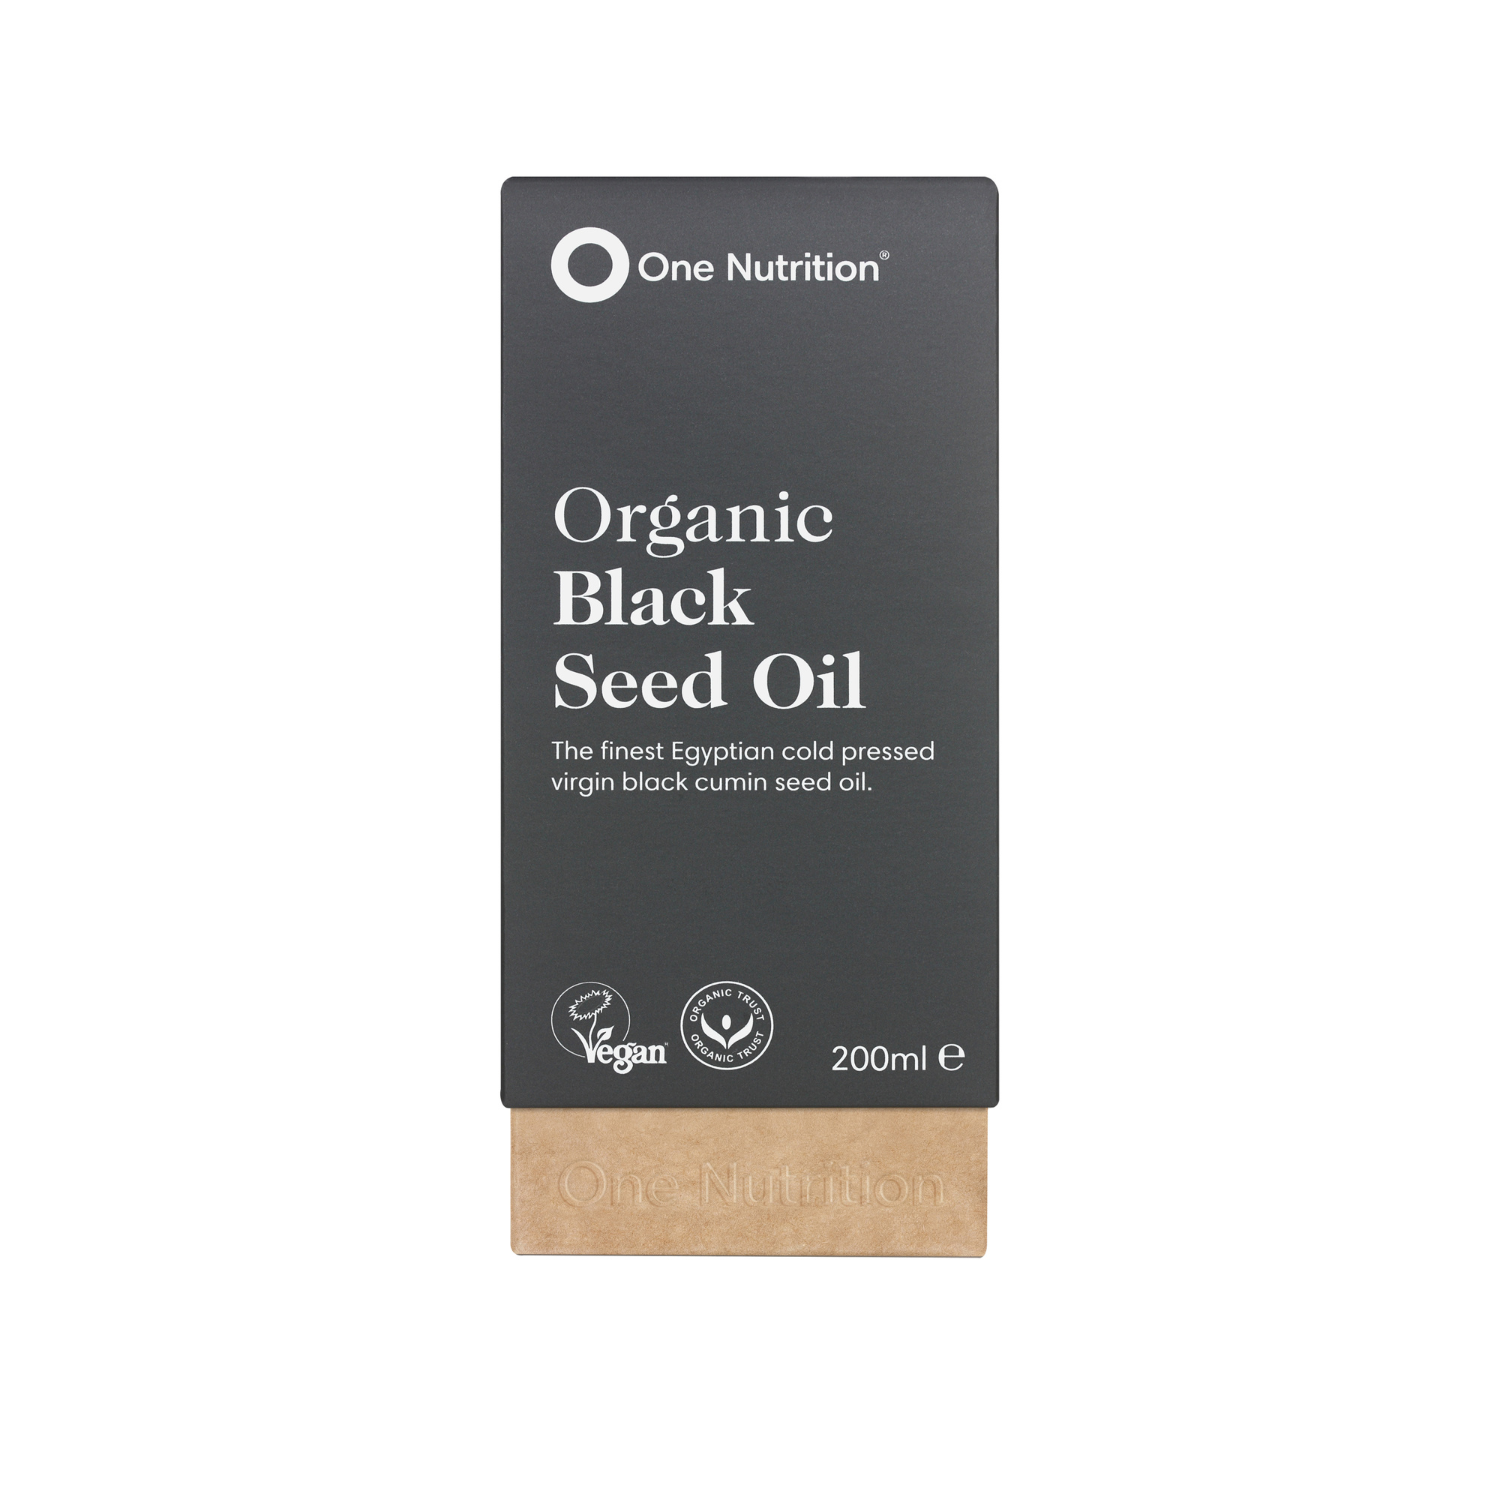 One Nutrition ekologiškas juodgrūdžių aliejus (Organic Black Seed Oil)